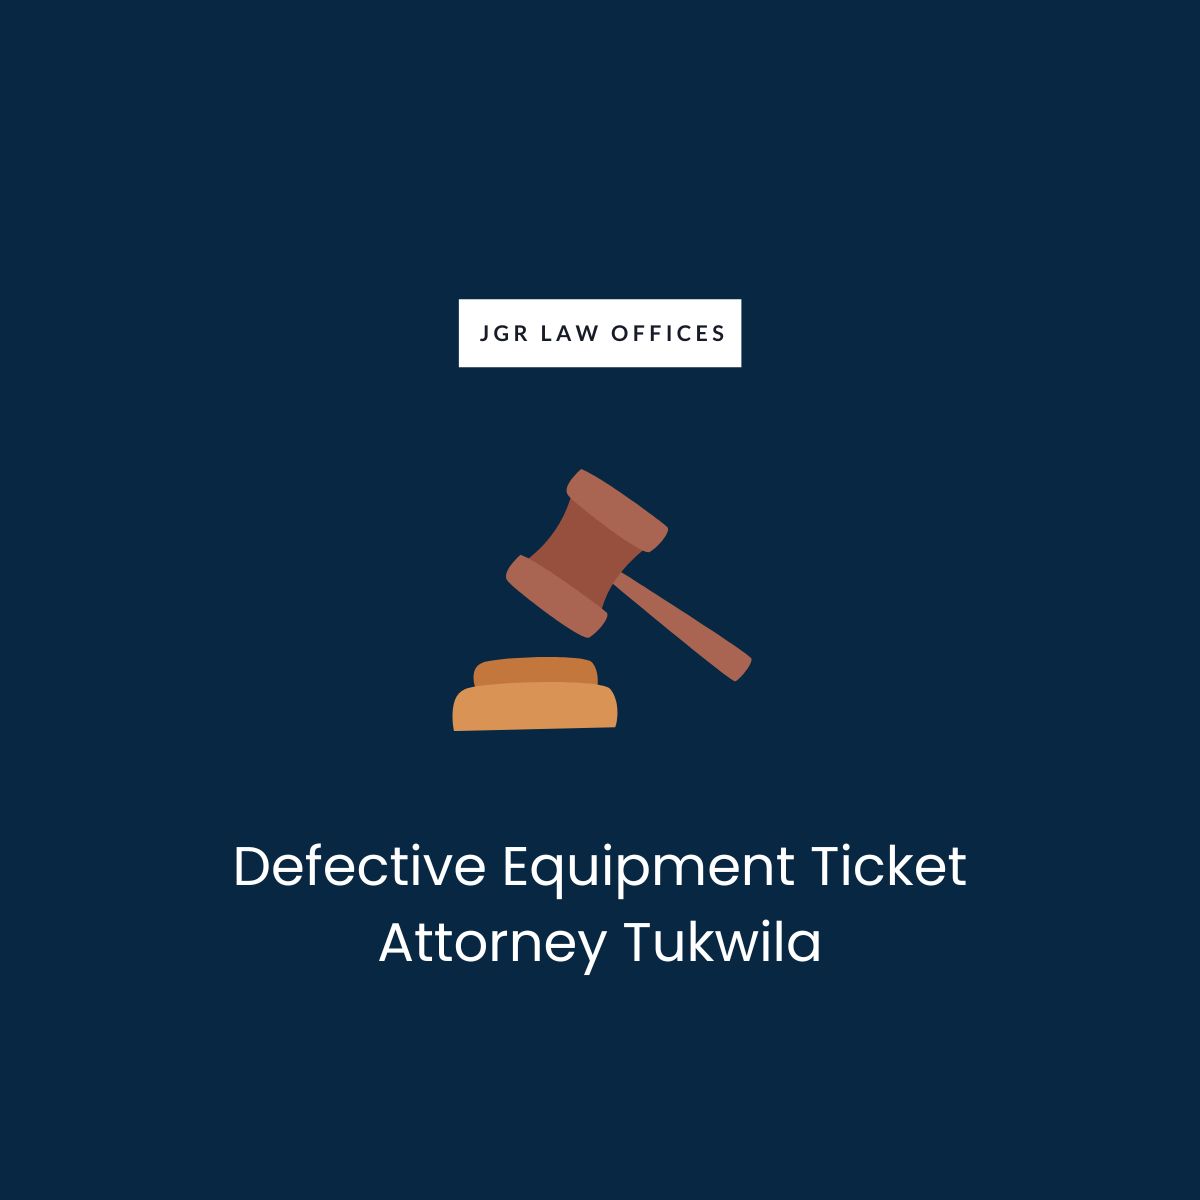 Defective Equipment Ticket Attorney Tukwila